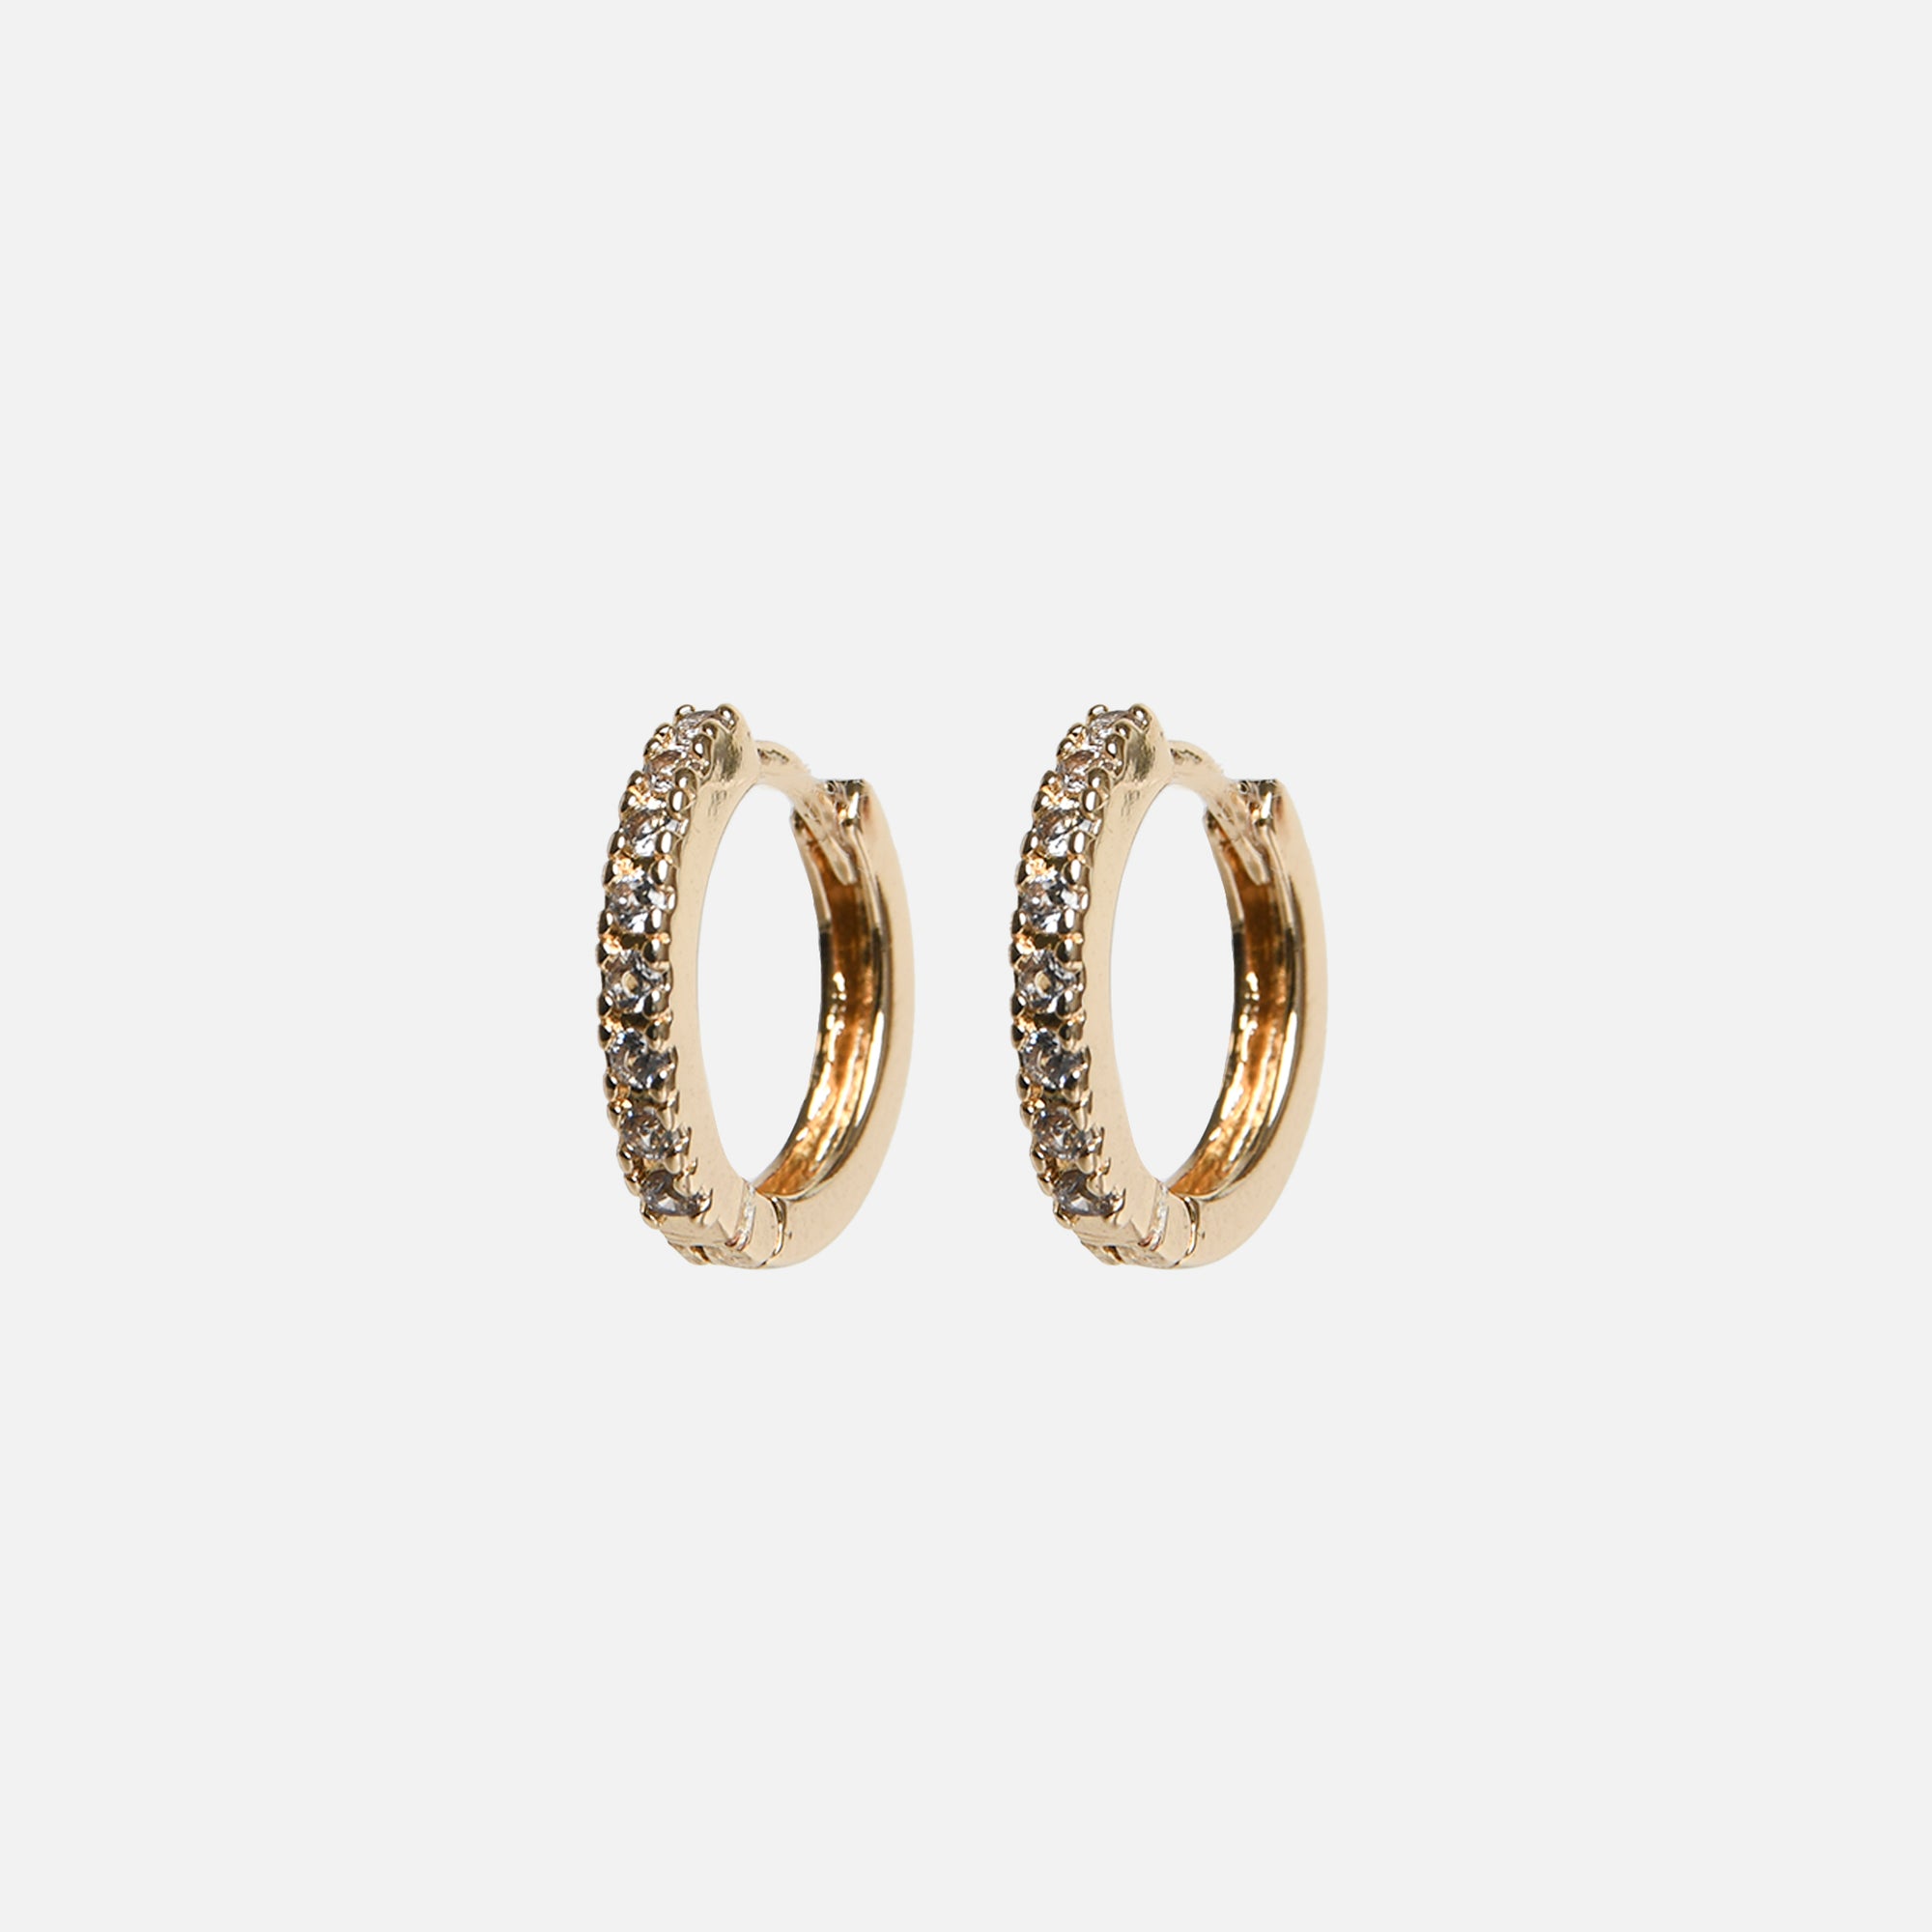 Duo de boucles d'oreilles dorées fixes et anneaux